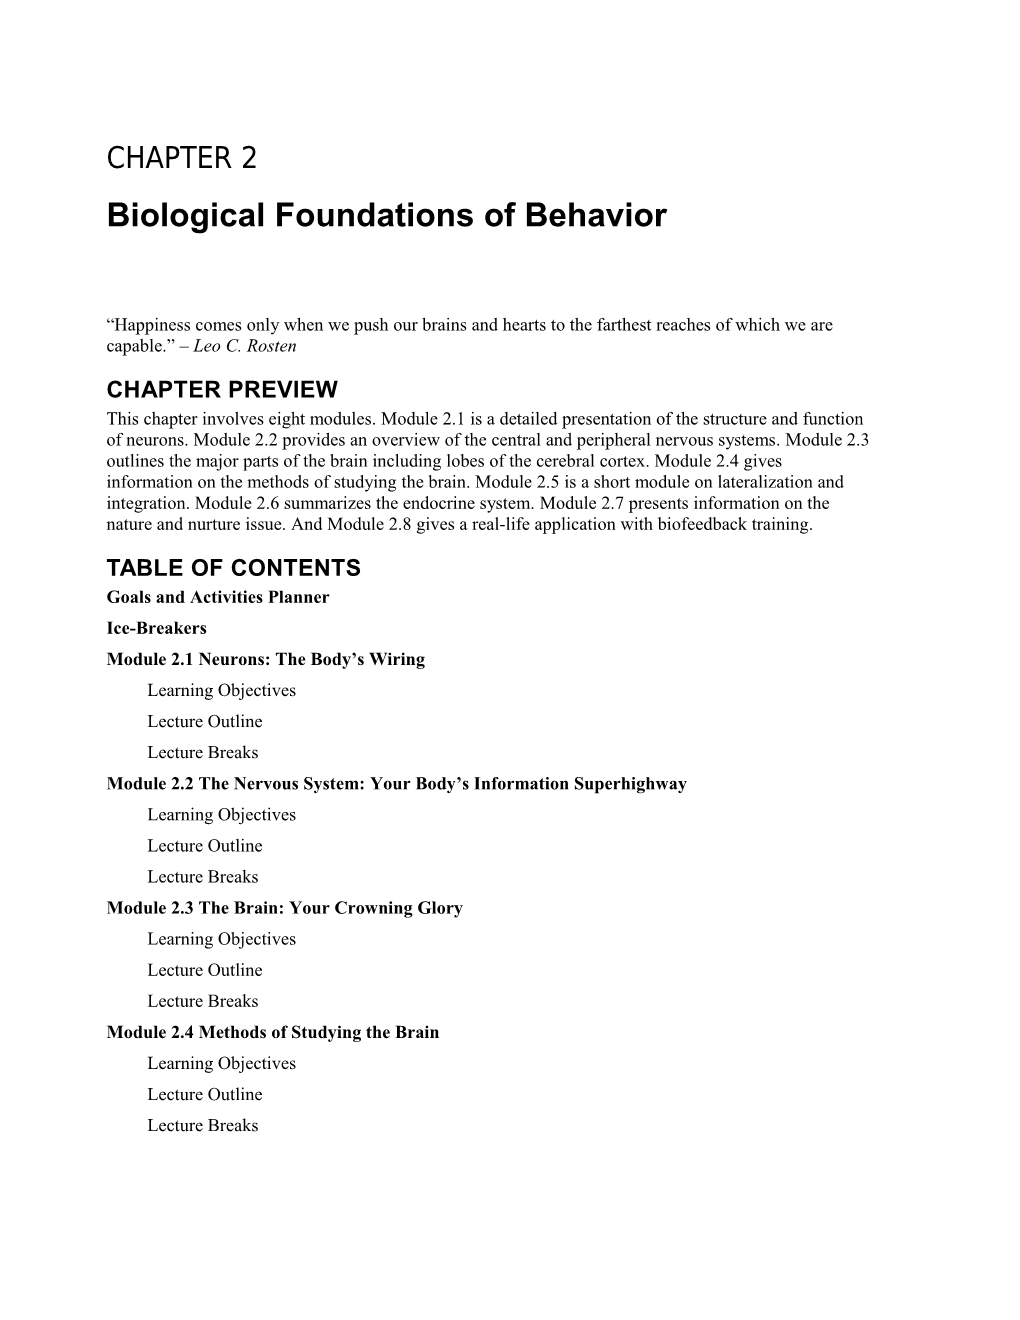 Chapter 2: Biological Foundations of Behavior 1